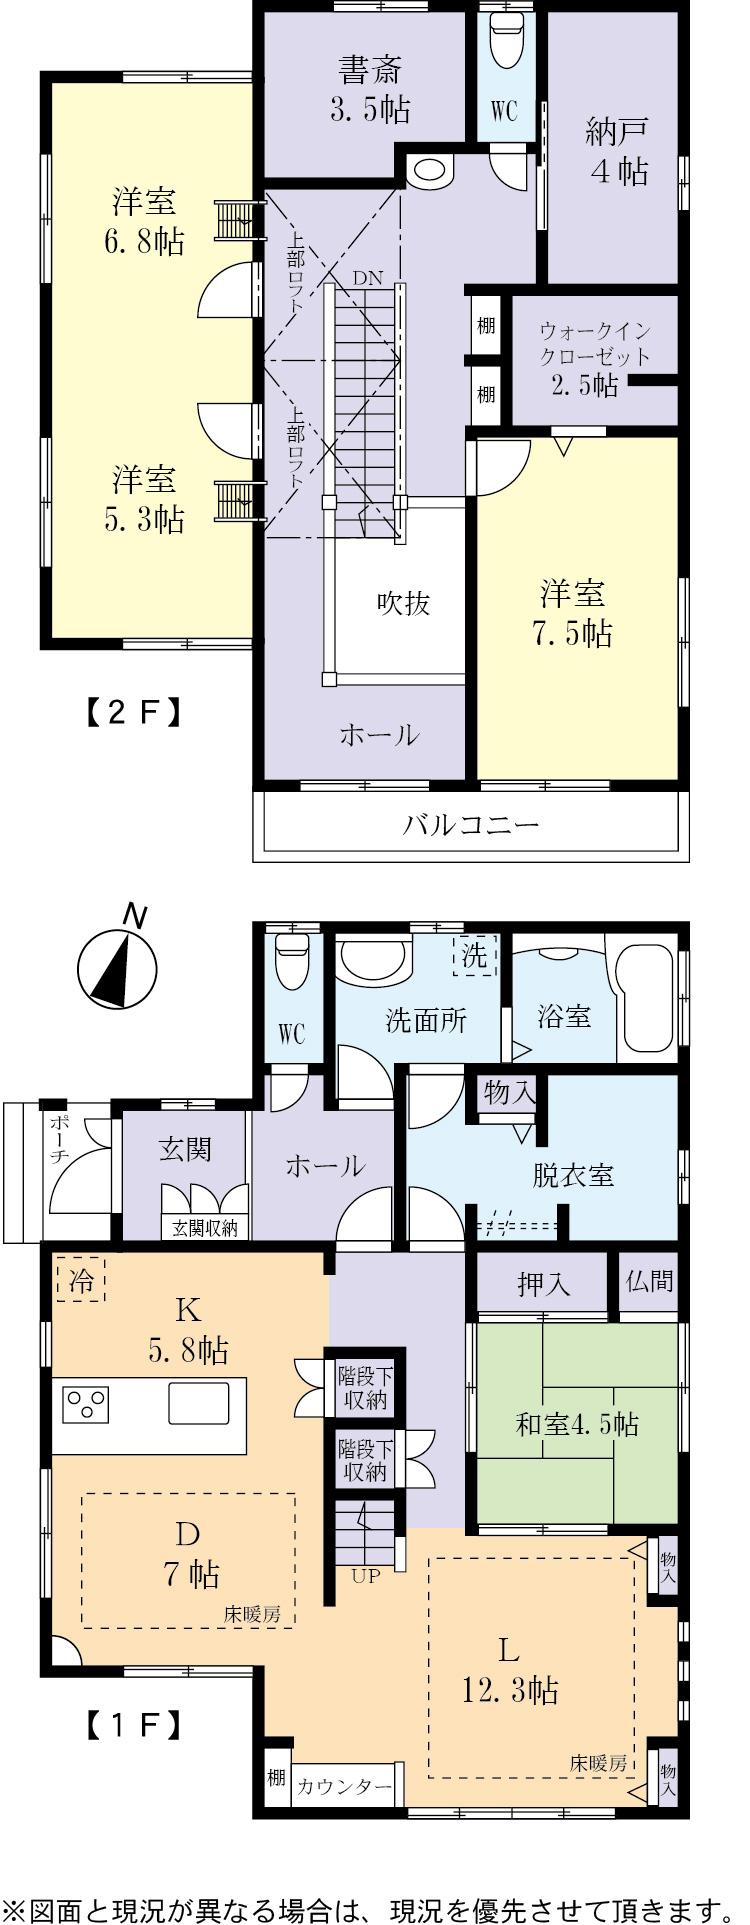 Floor plan. 25,800,000 yen, 4LDK + S (storeroom), Land area 229.5 sq m , Building area 151.12 sq m